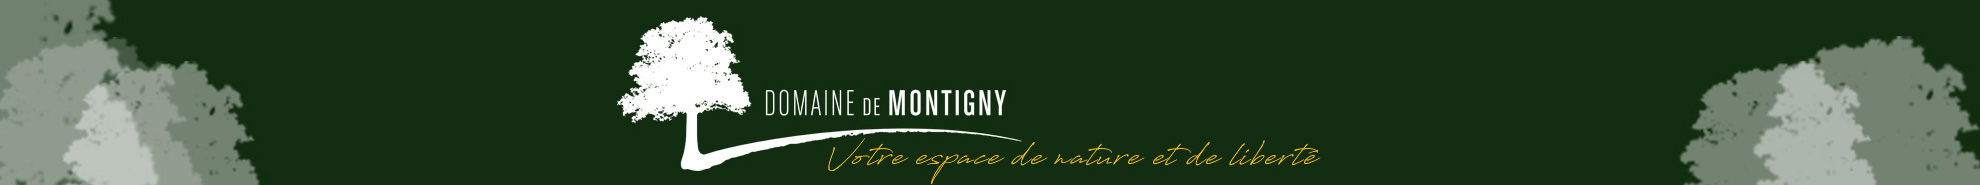 Domaine de Montigny.fr-logo et tétière